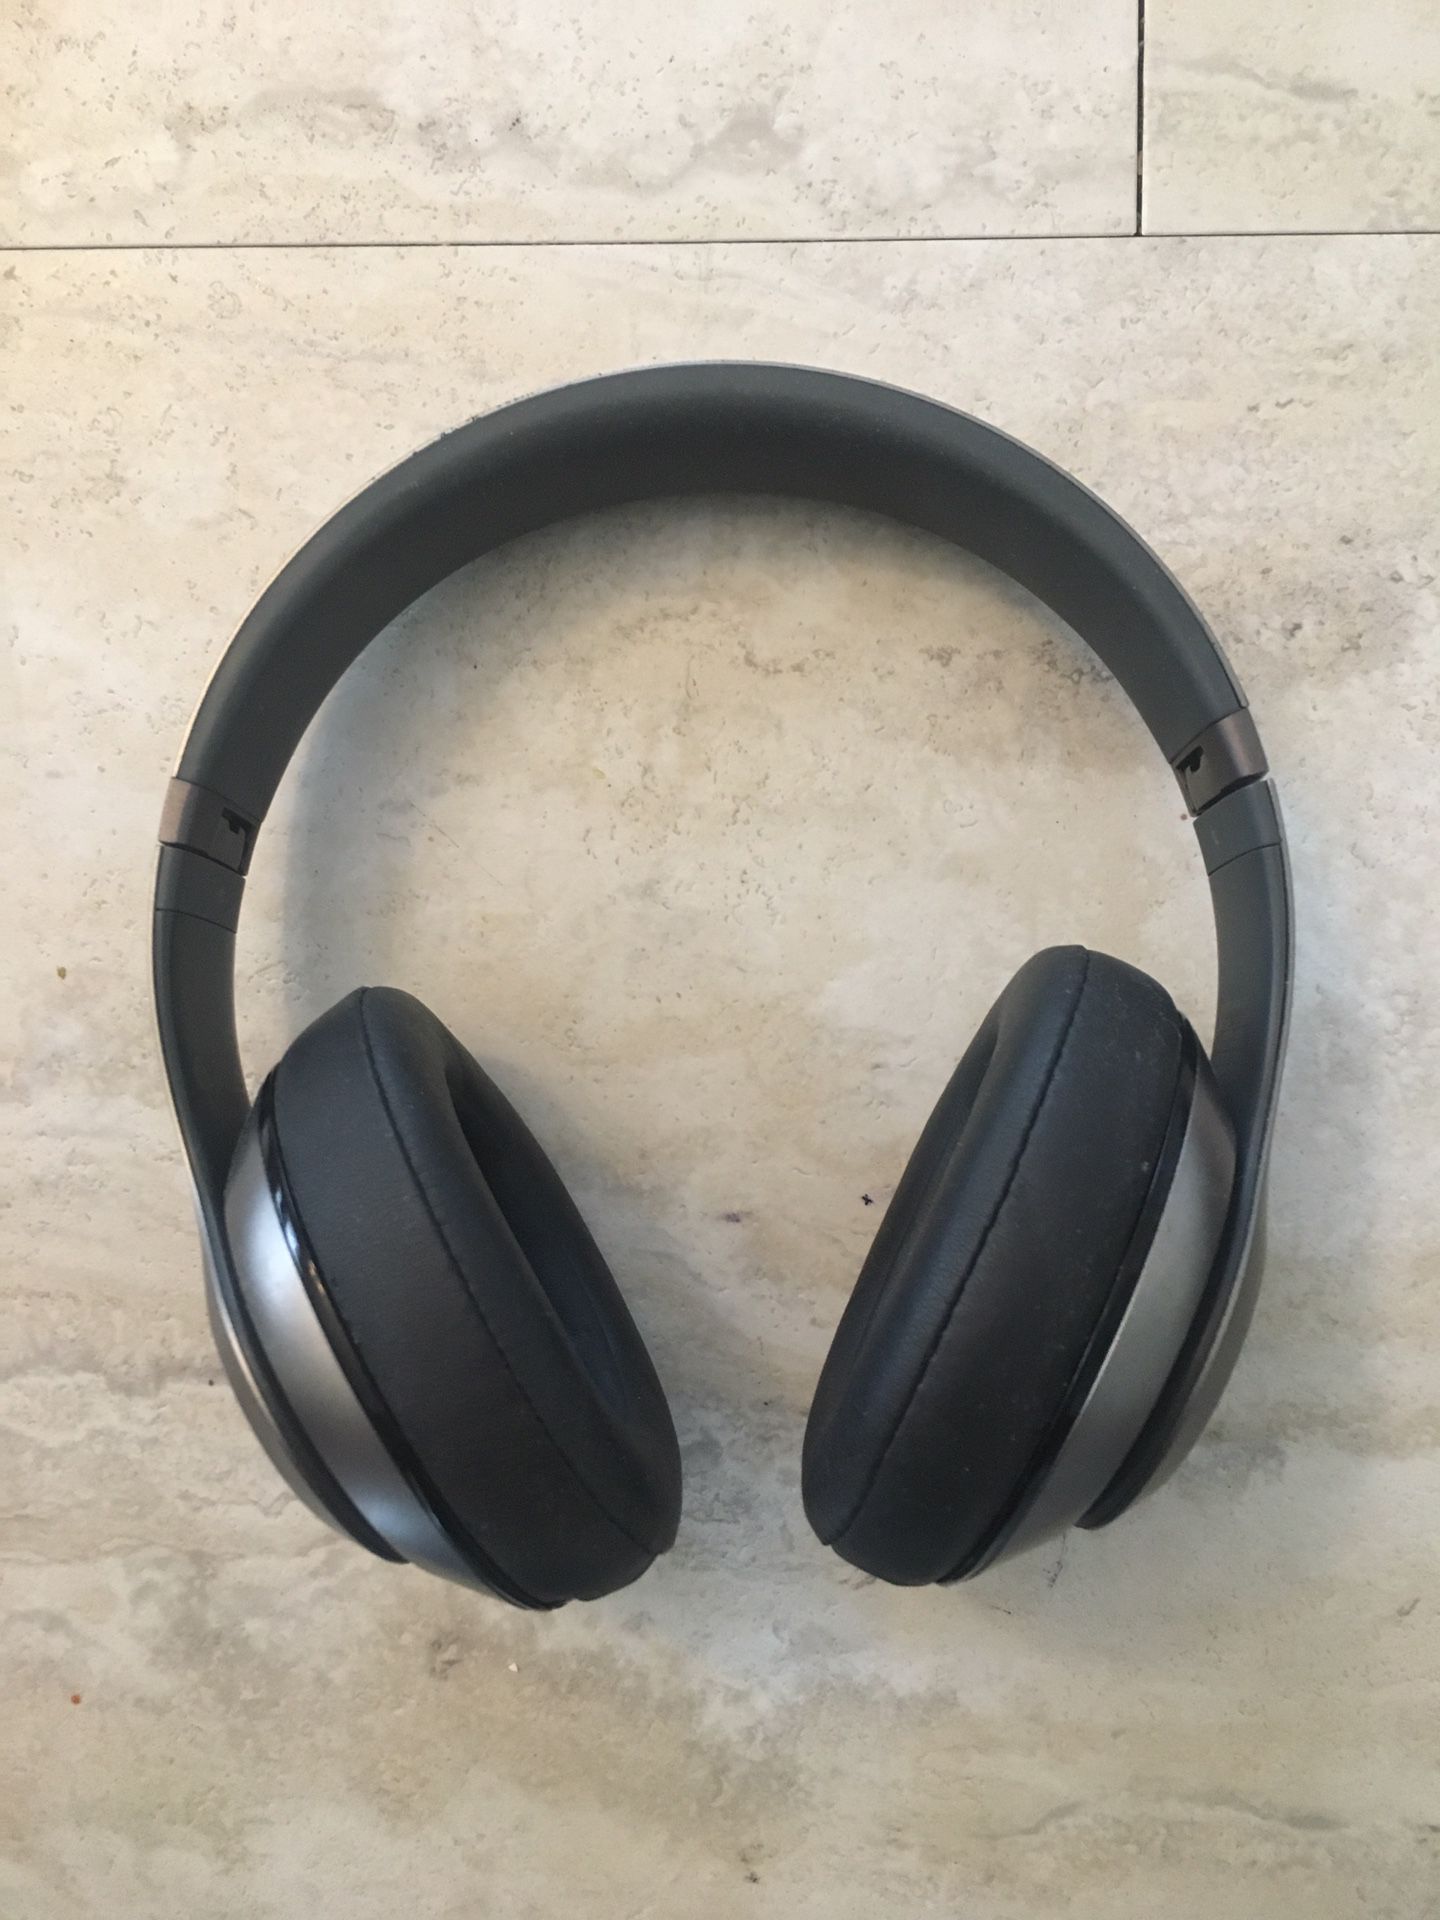 Beats studio 3 headphones